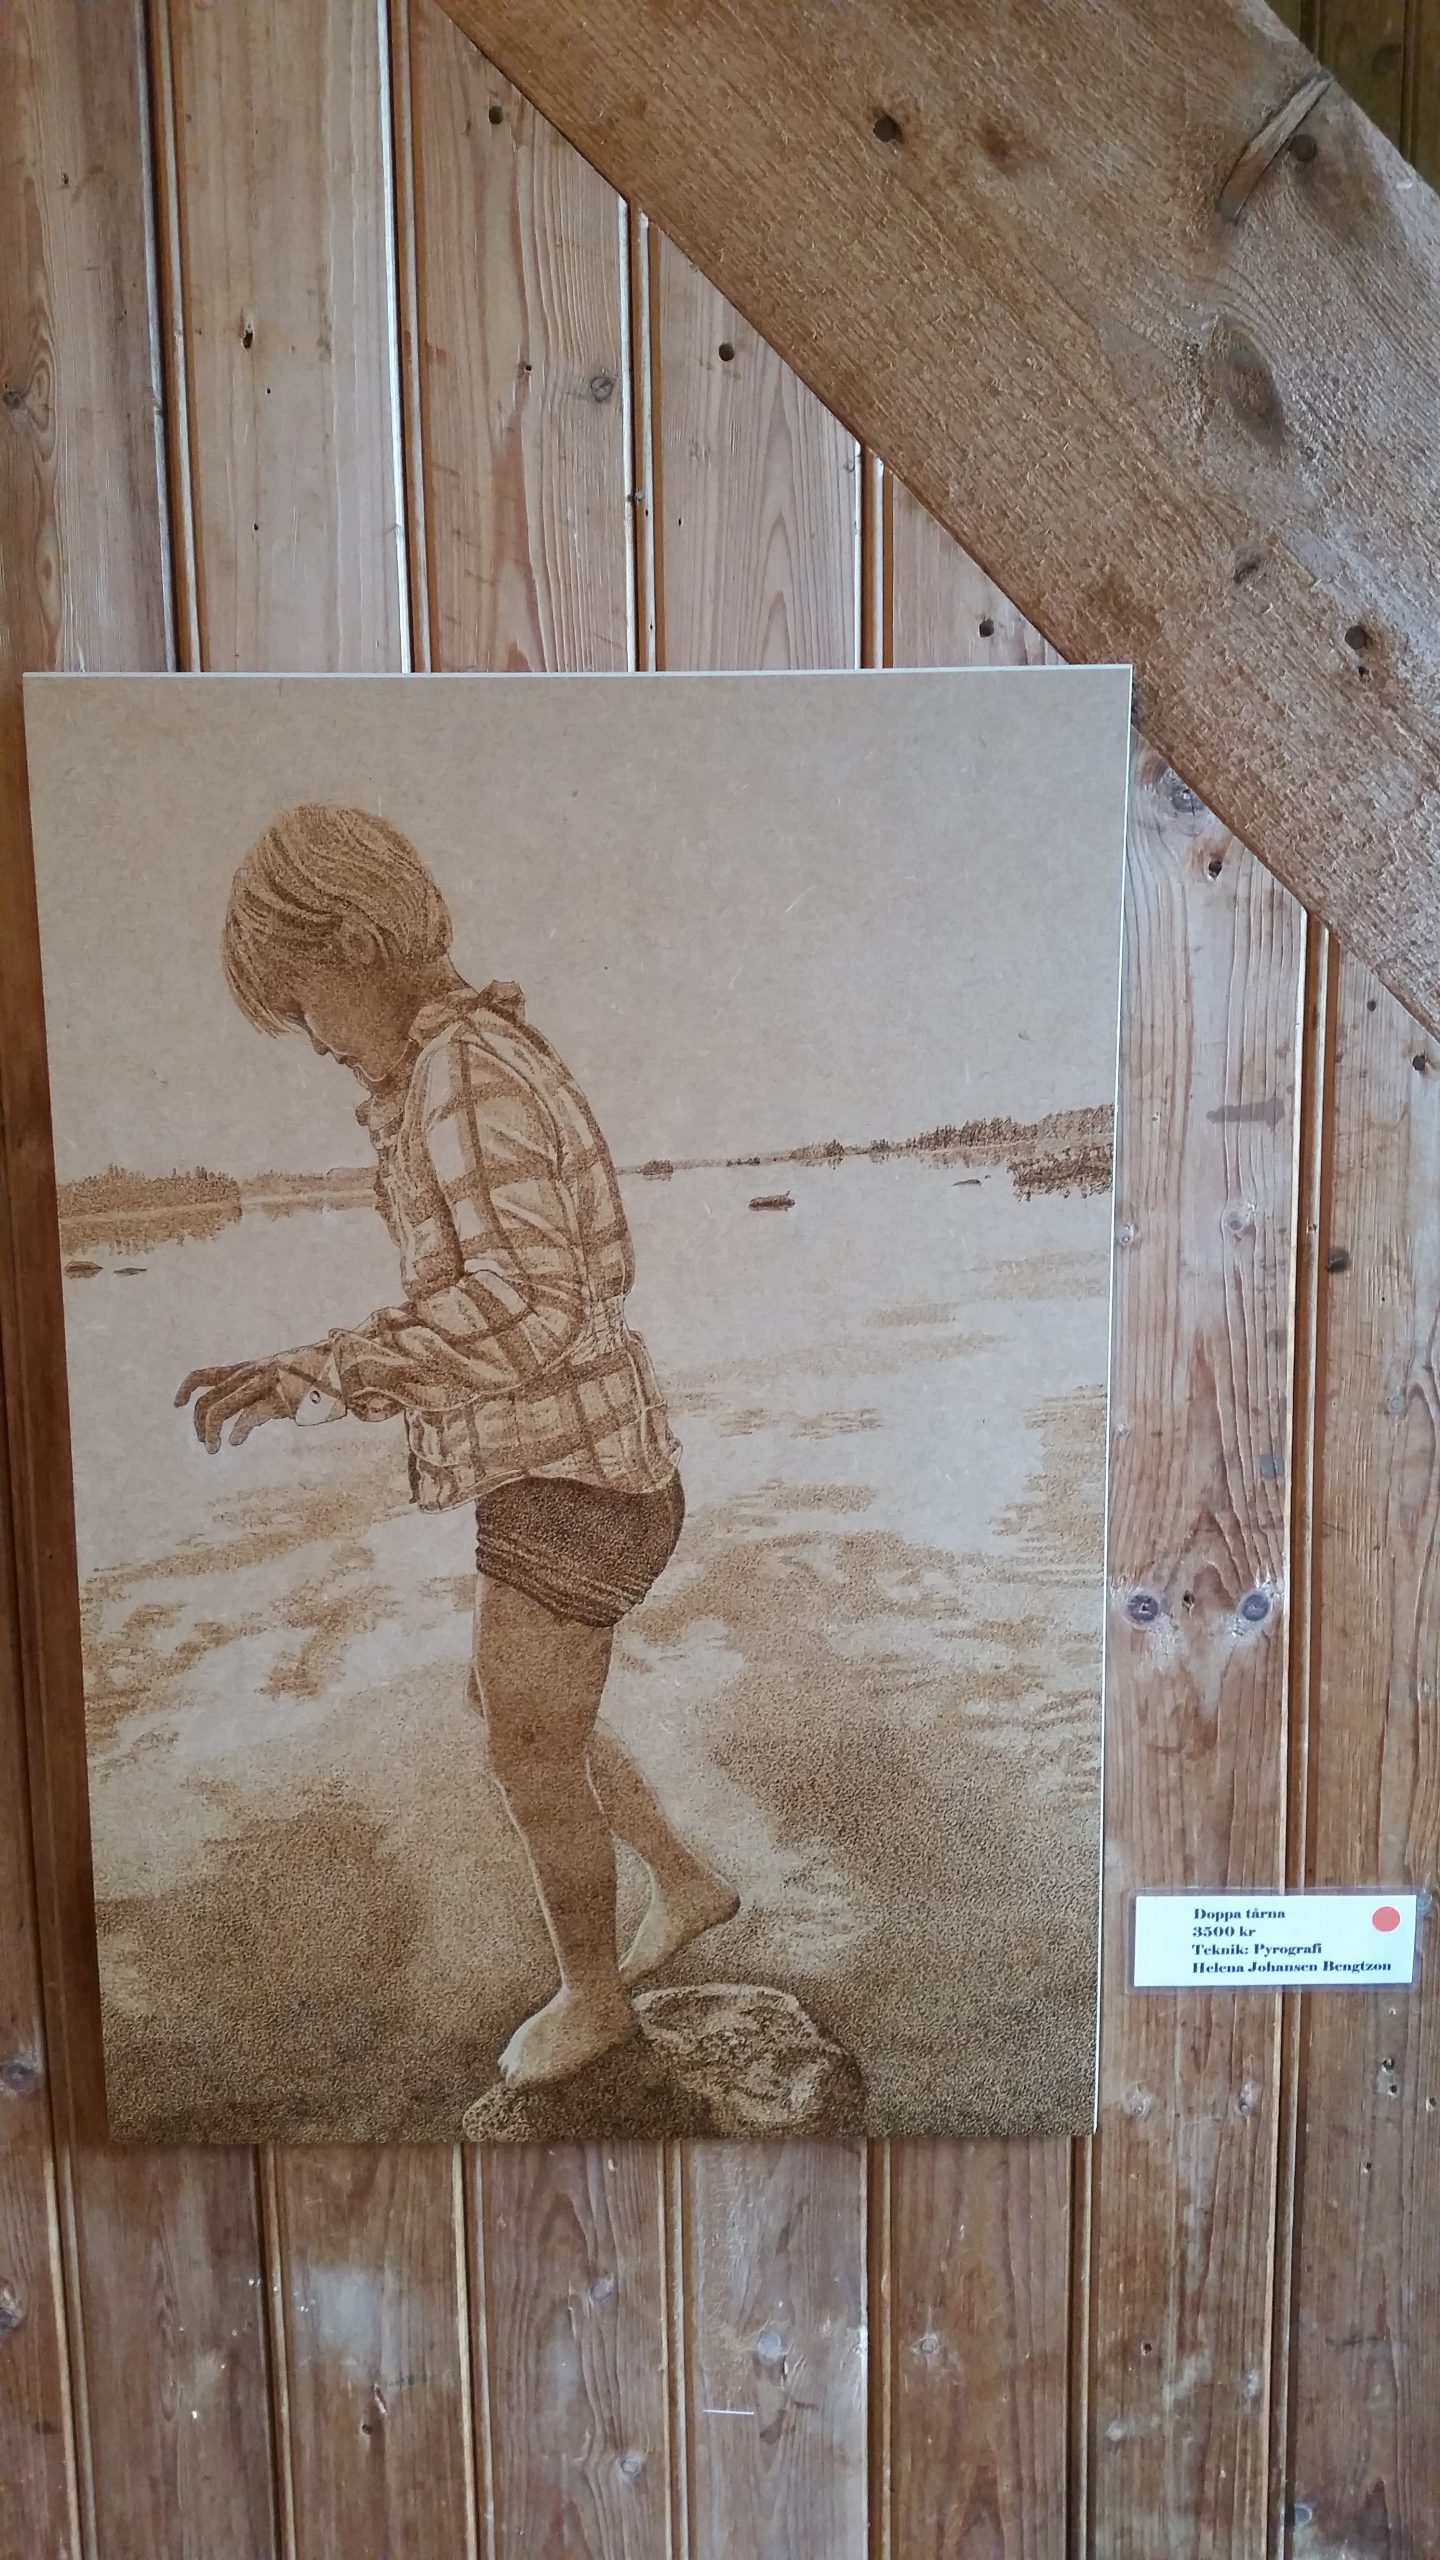 trätavla med glödritat motiv, ung flicka med shorts och skjorta i helfigur vid strand som tar ett steg ut i vattnet